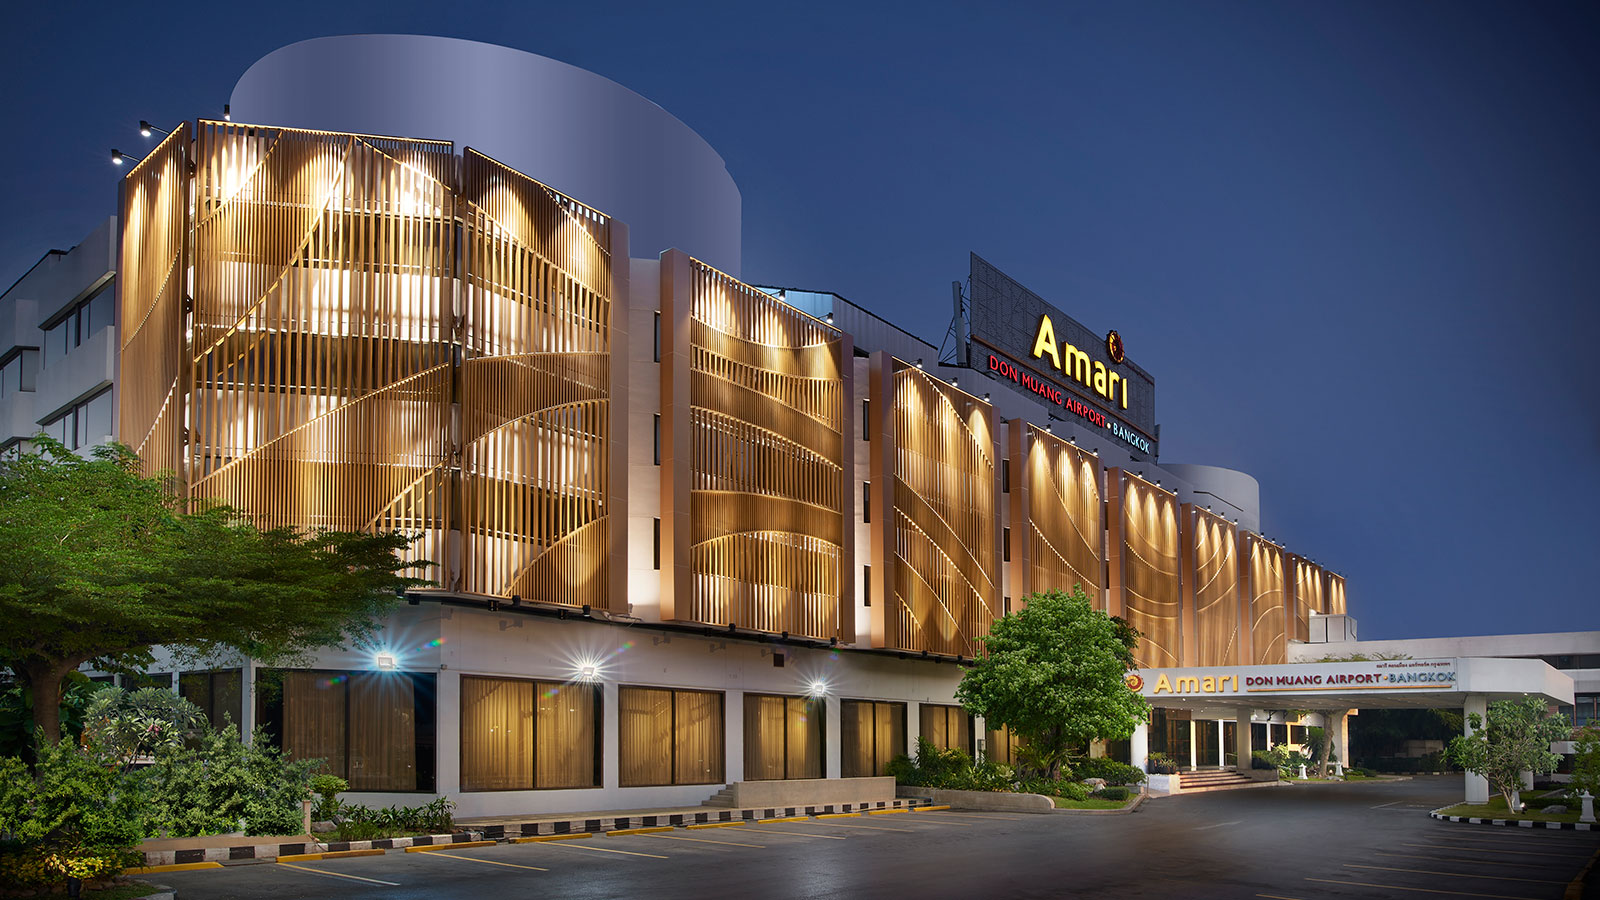 Amari Hotel ngay sát bên trường bay Don Muang